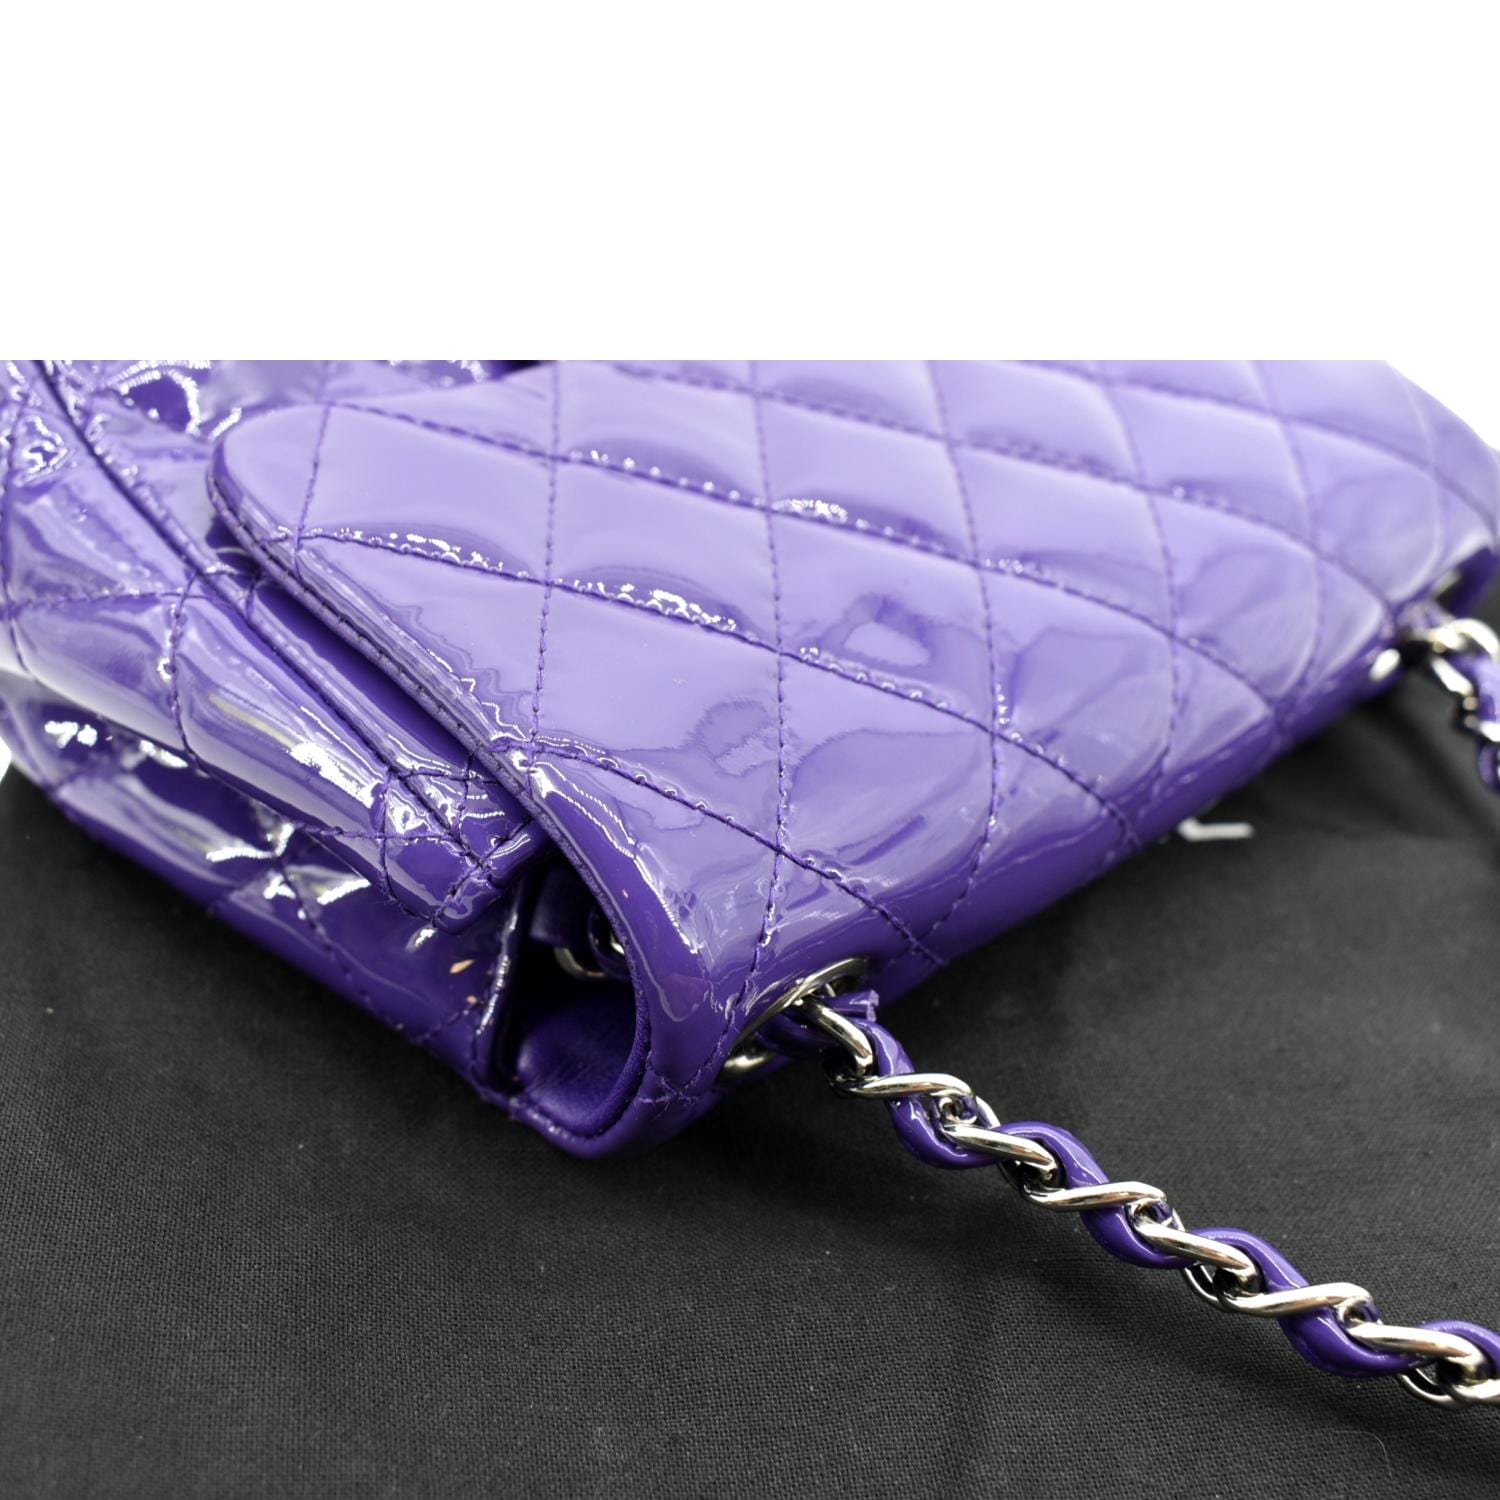 chanel purple tote bag